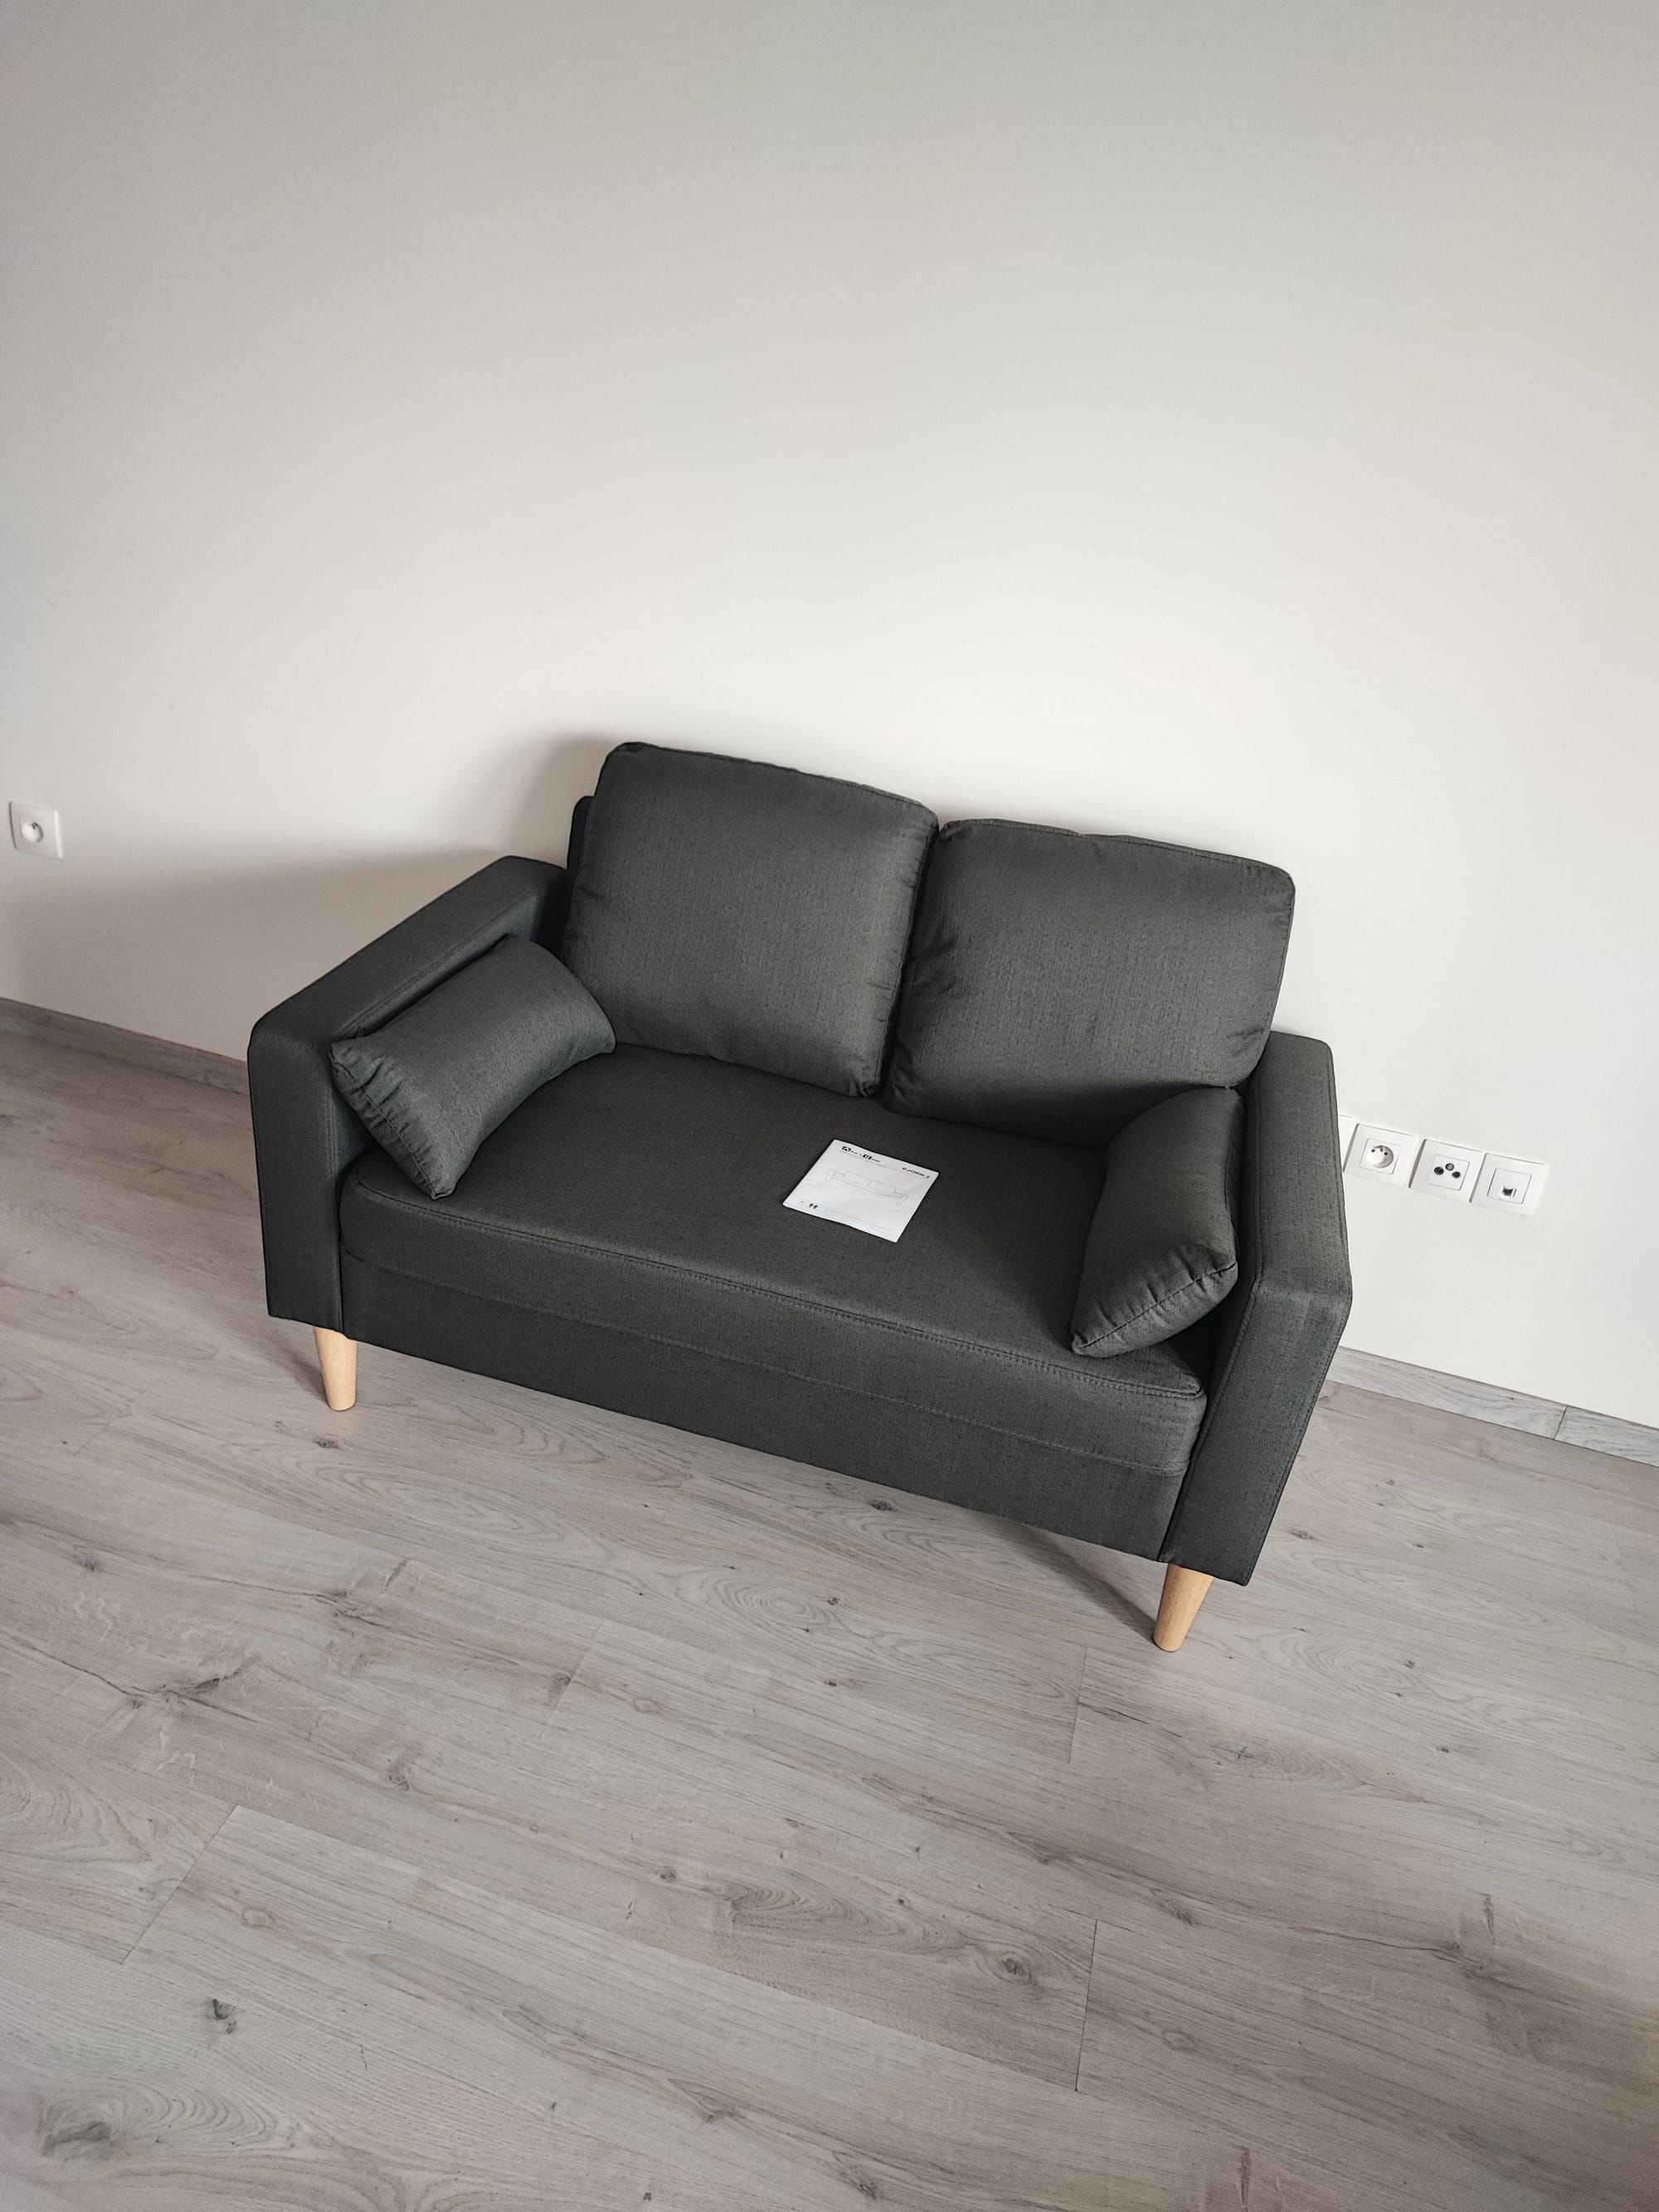 Montage de meuble & agencement d'un canapé 2 places Conforama.